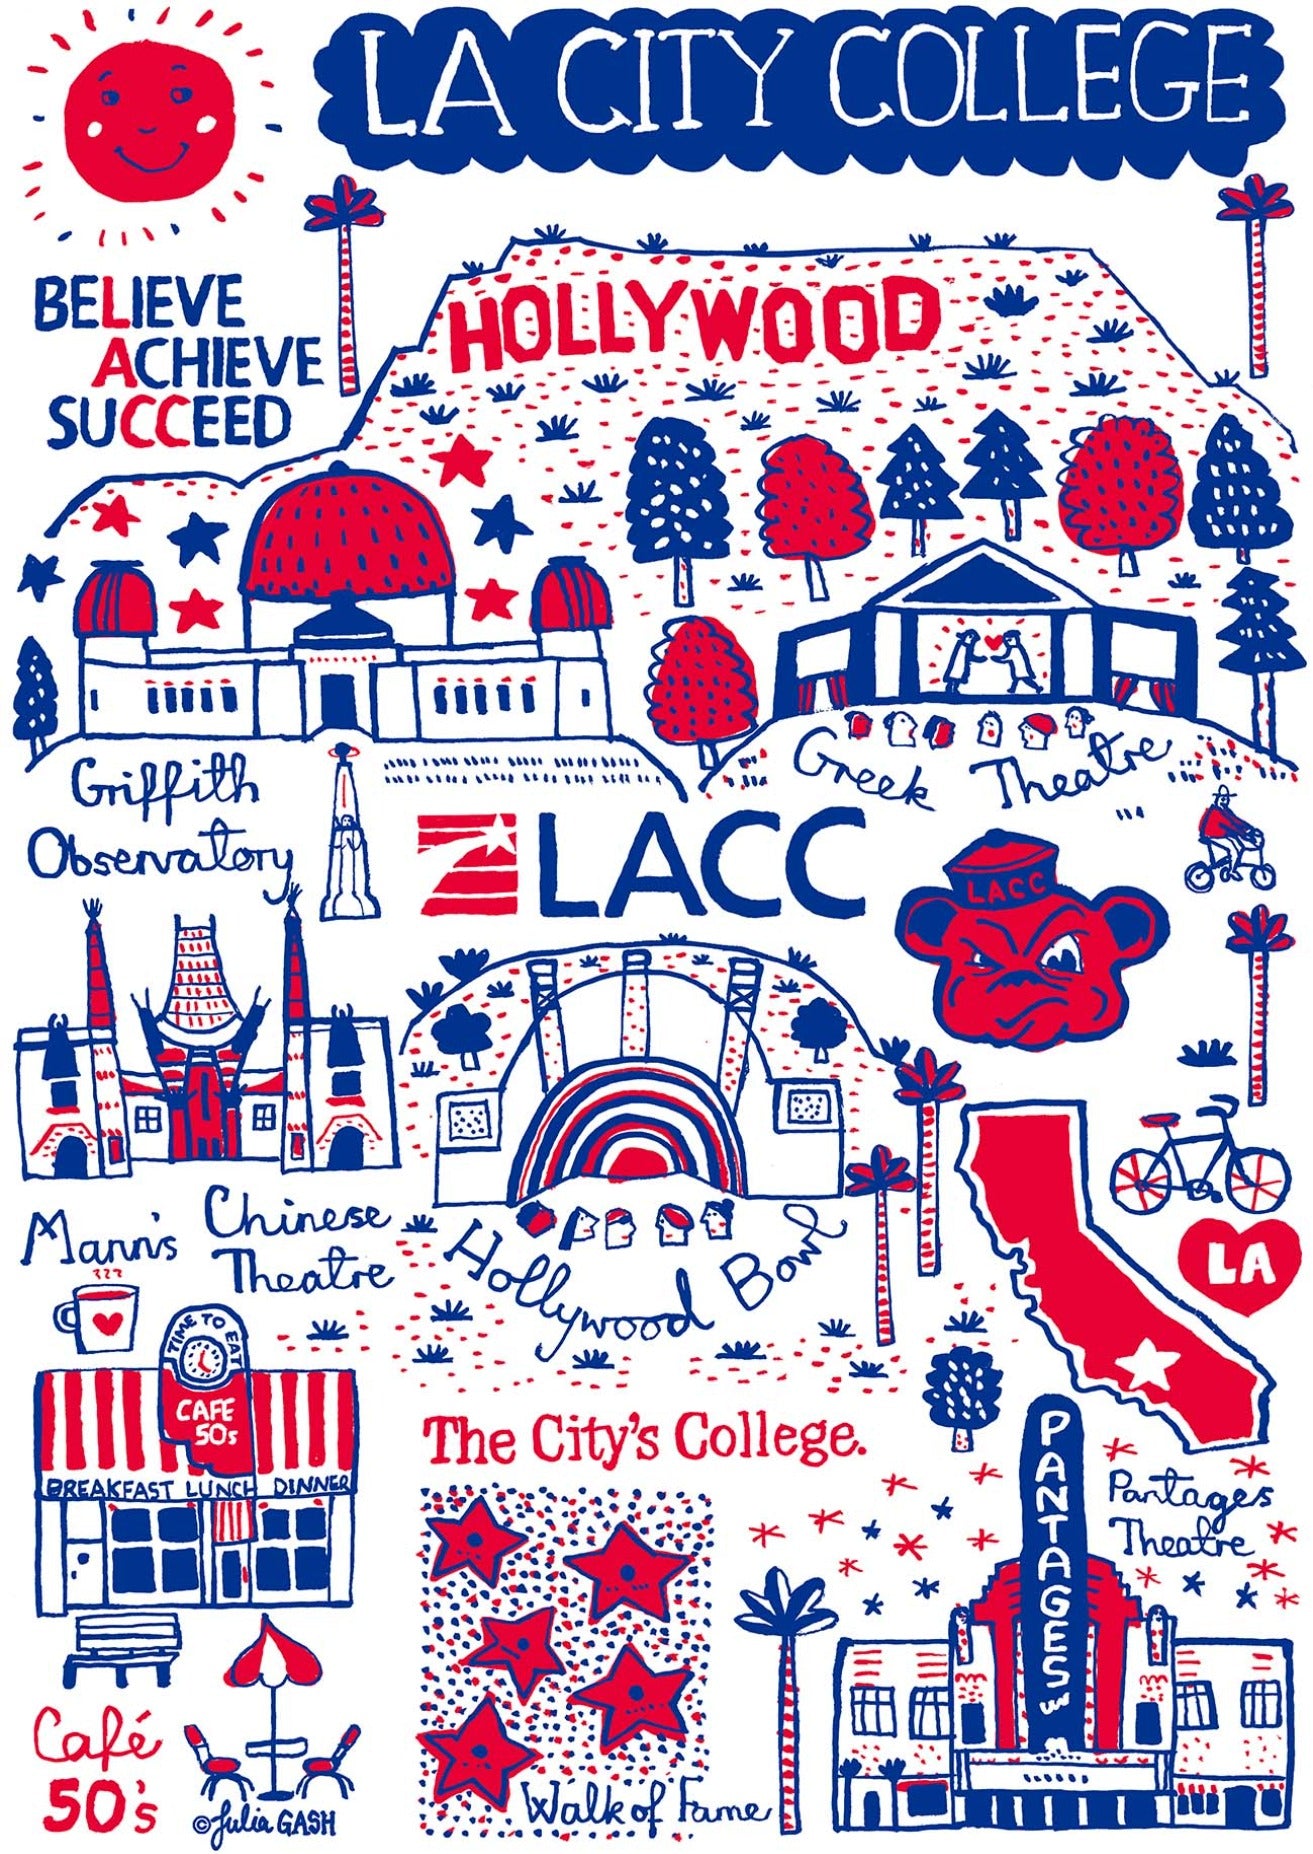 LA City College by Julia Gash